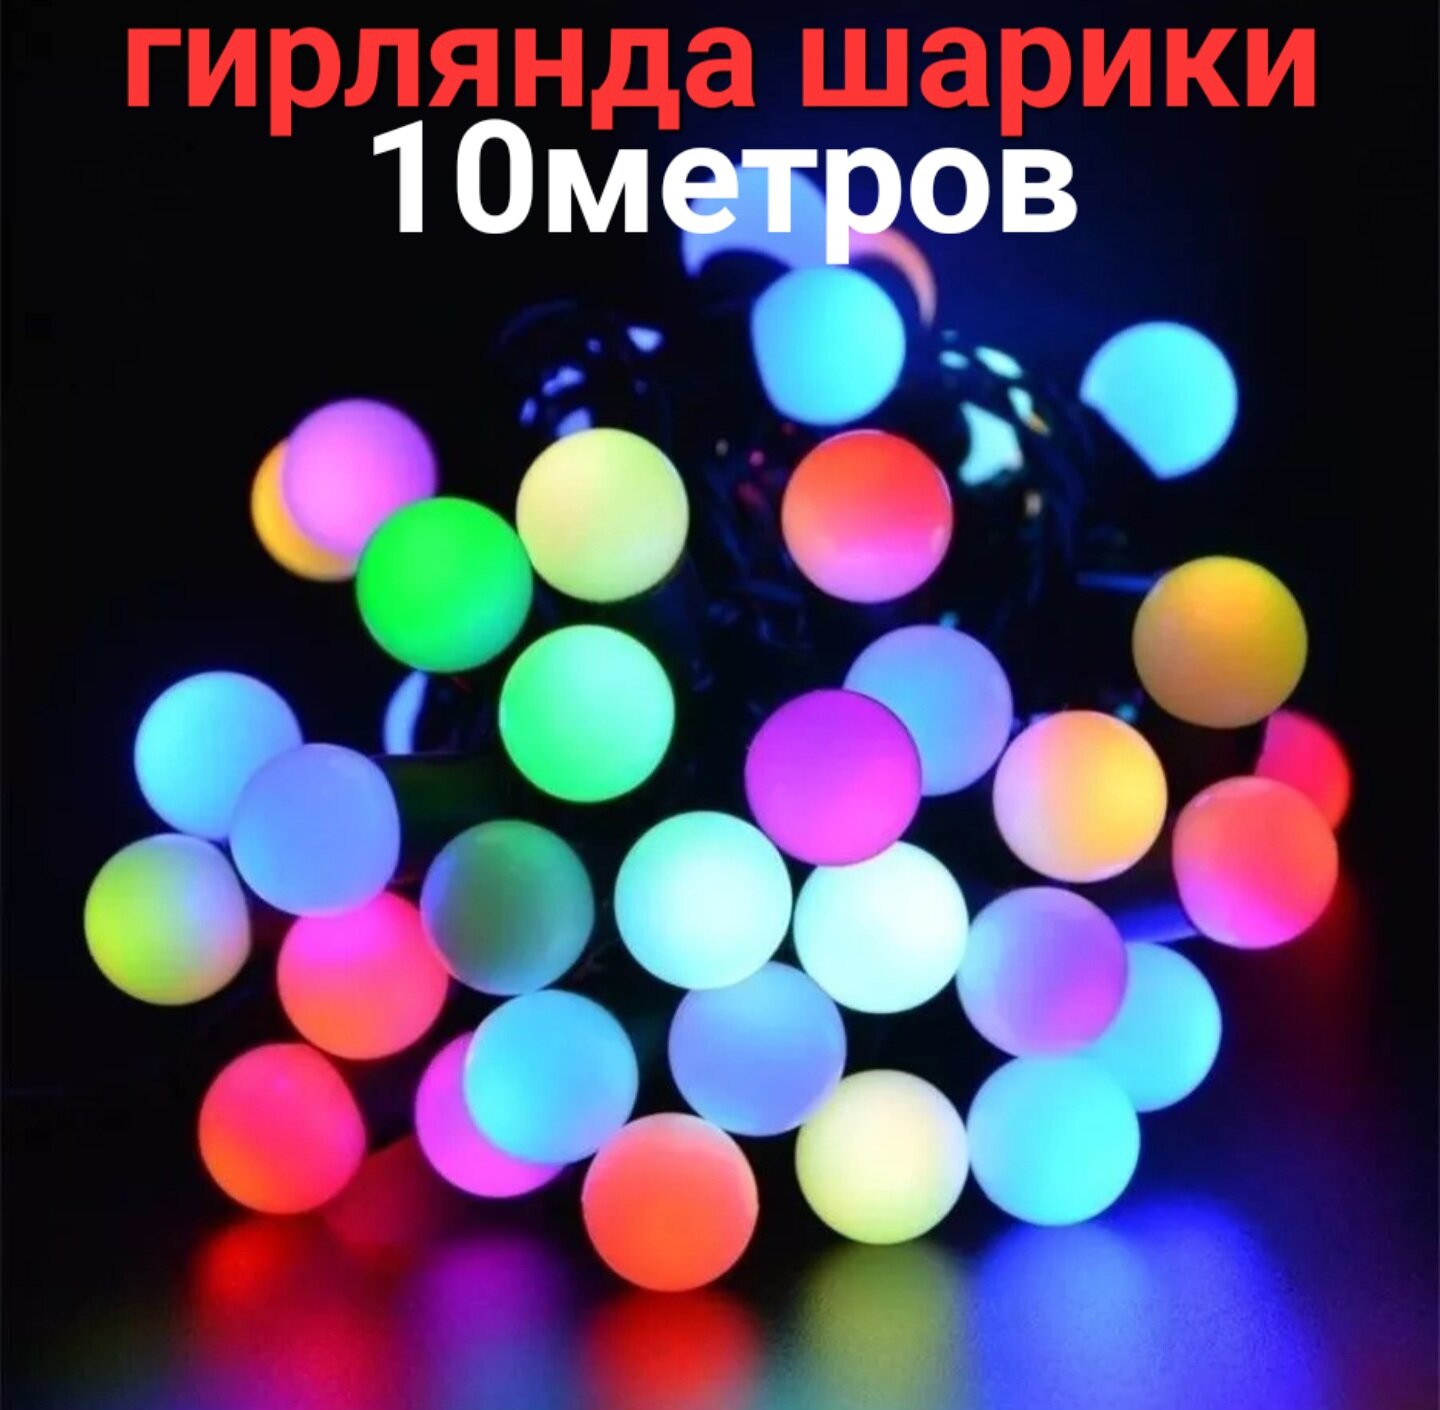 Гирлянда шарики лампочки 303-509-6, 10 м, 80 ламп, разноцветный